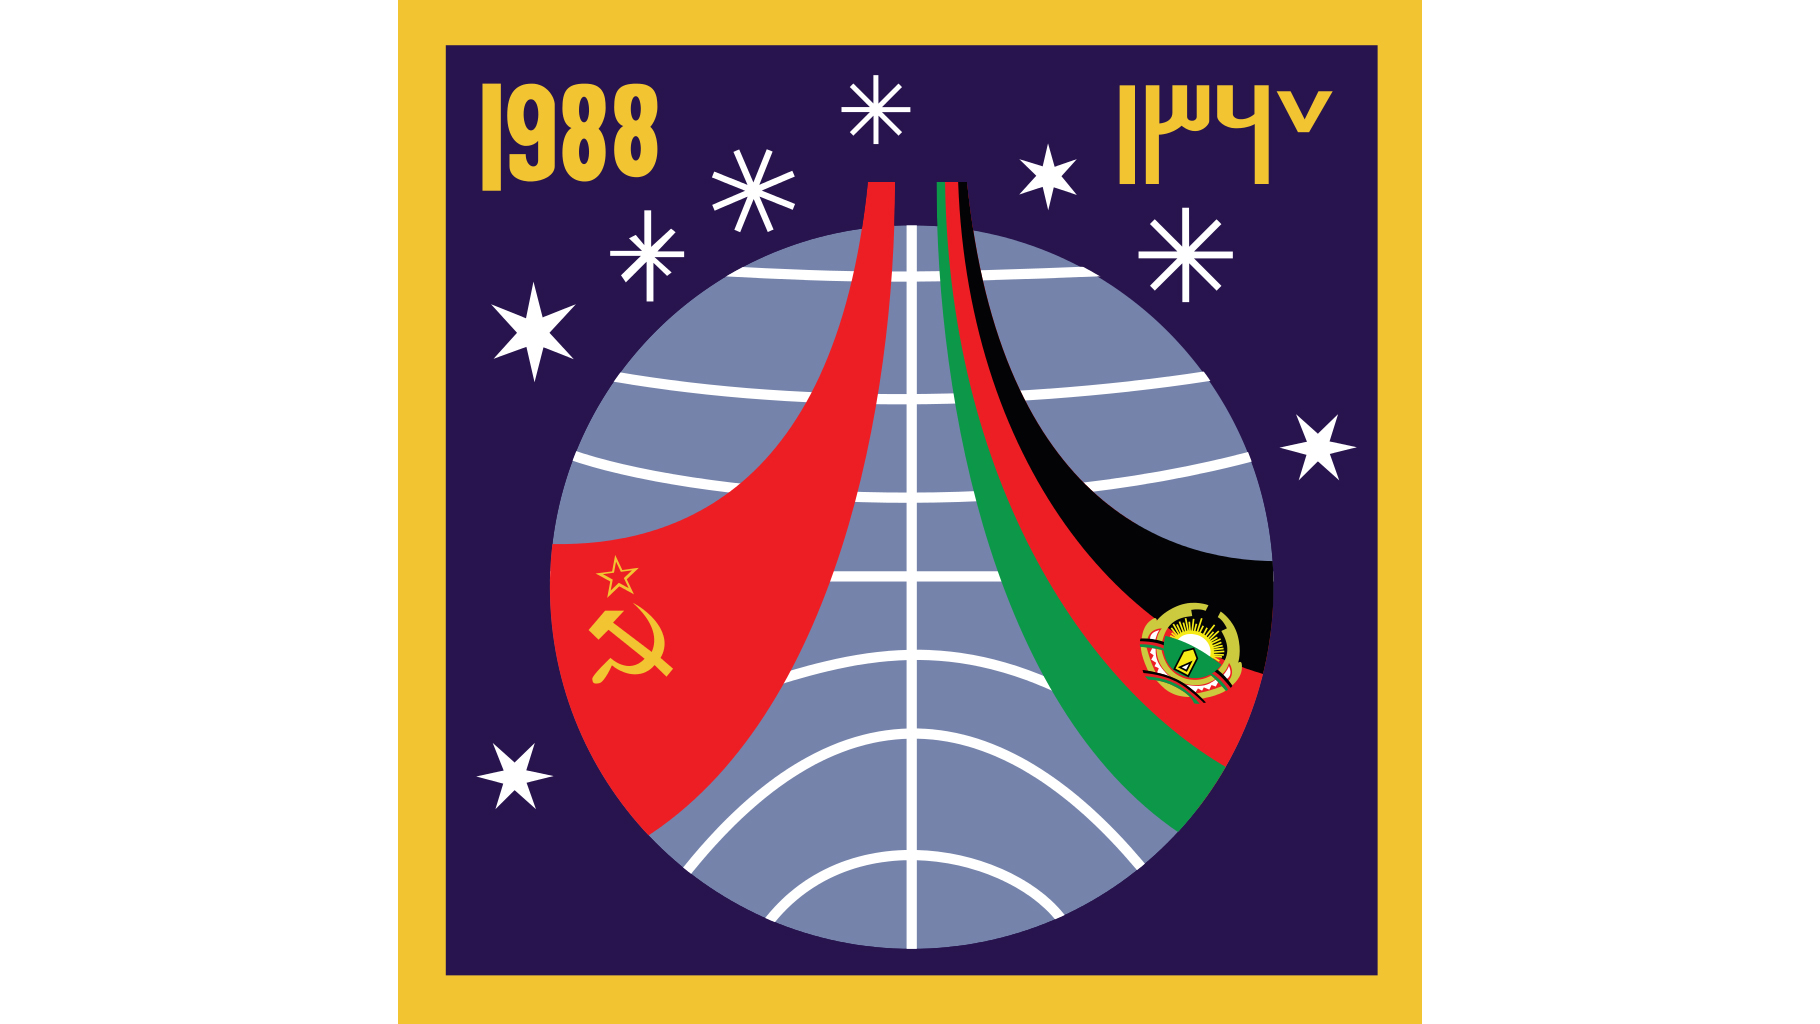 Эмблема советско-афганской экспедиции на станцию "Мир" в 1988 году. Союз ТМ-6 Фото © wikipedia